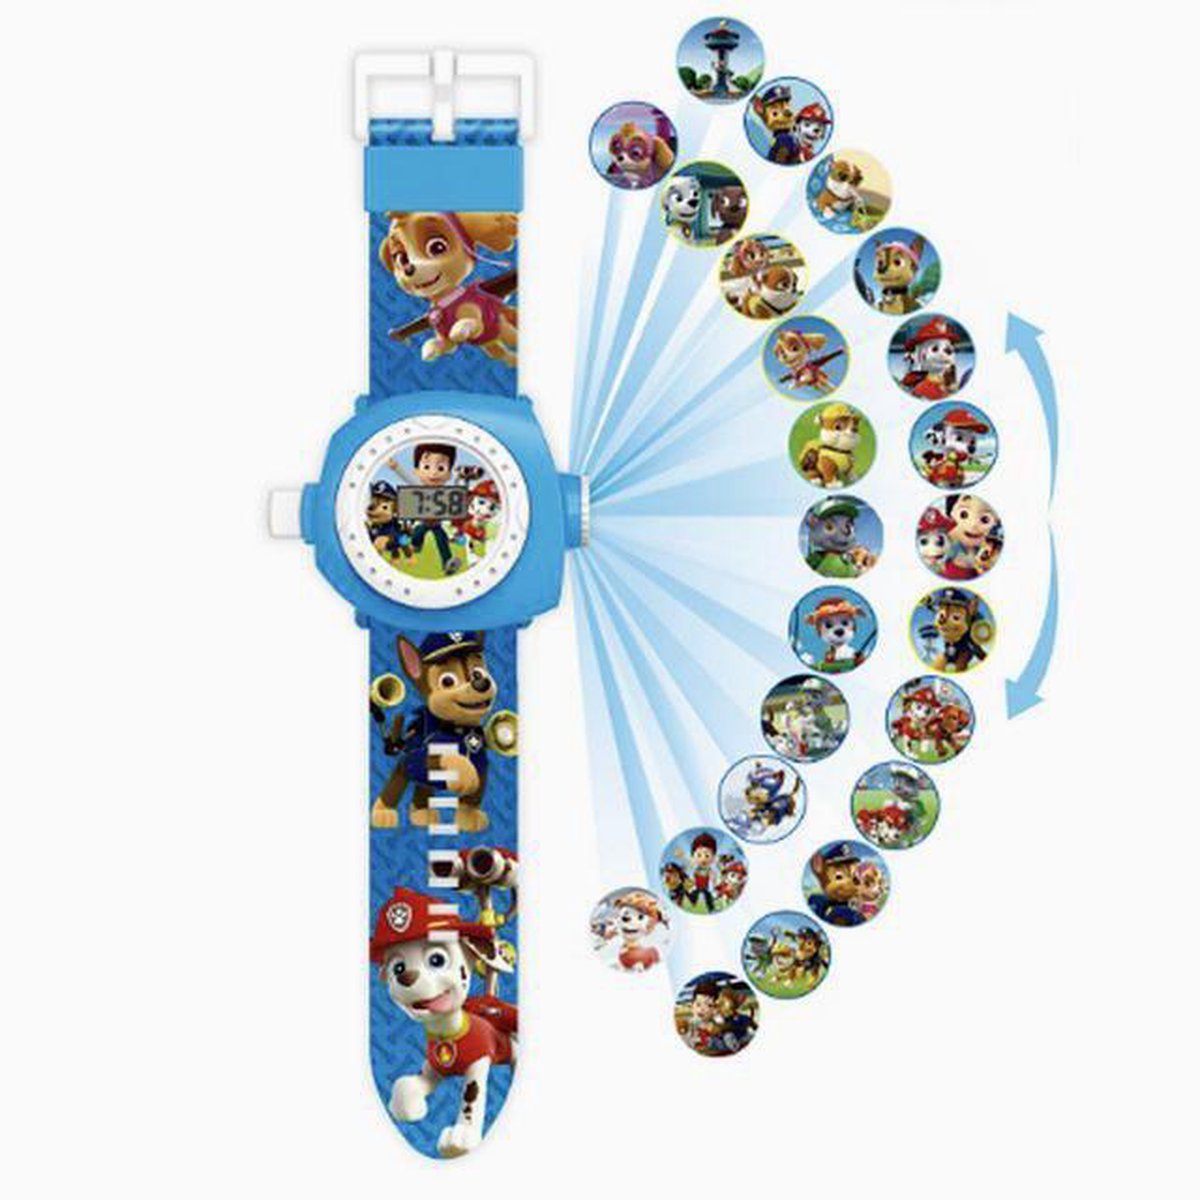 PAW Patrol Digitale kinder horloge Blauw |Projector Horloge | Speelgoed Watch | Marshall | Chase